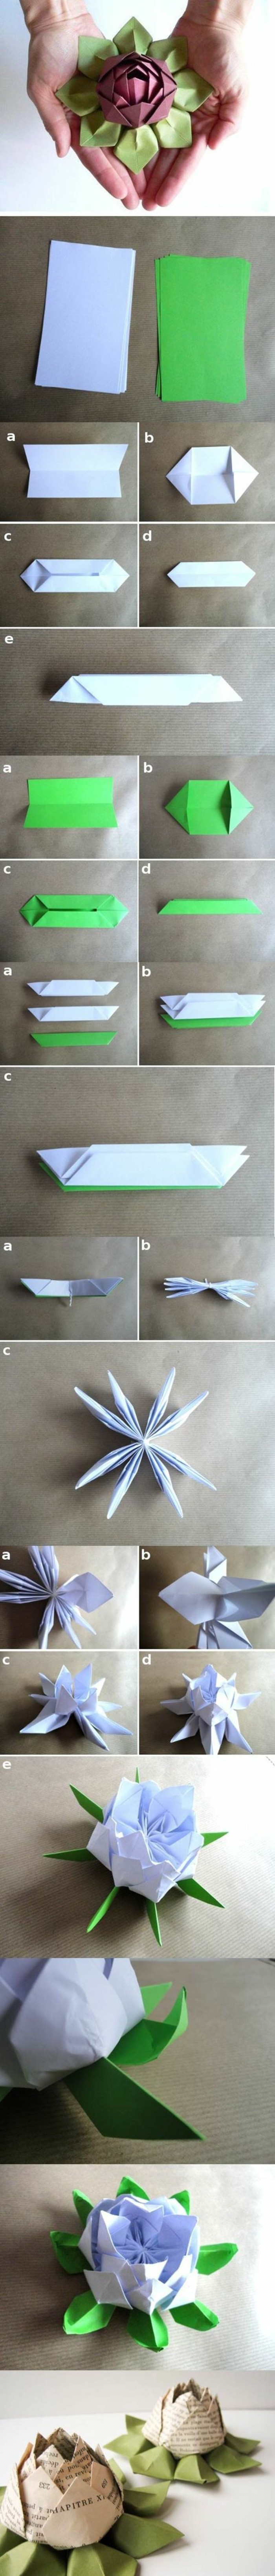 Origami Rose instrucción de origami plegado de flores plegable técnica de Origami